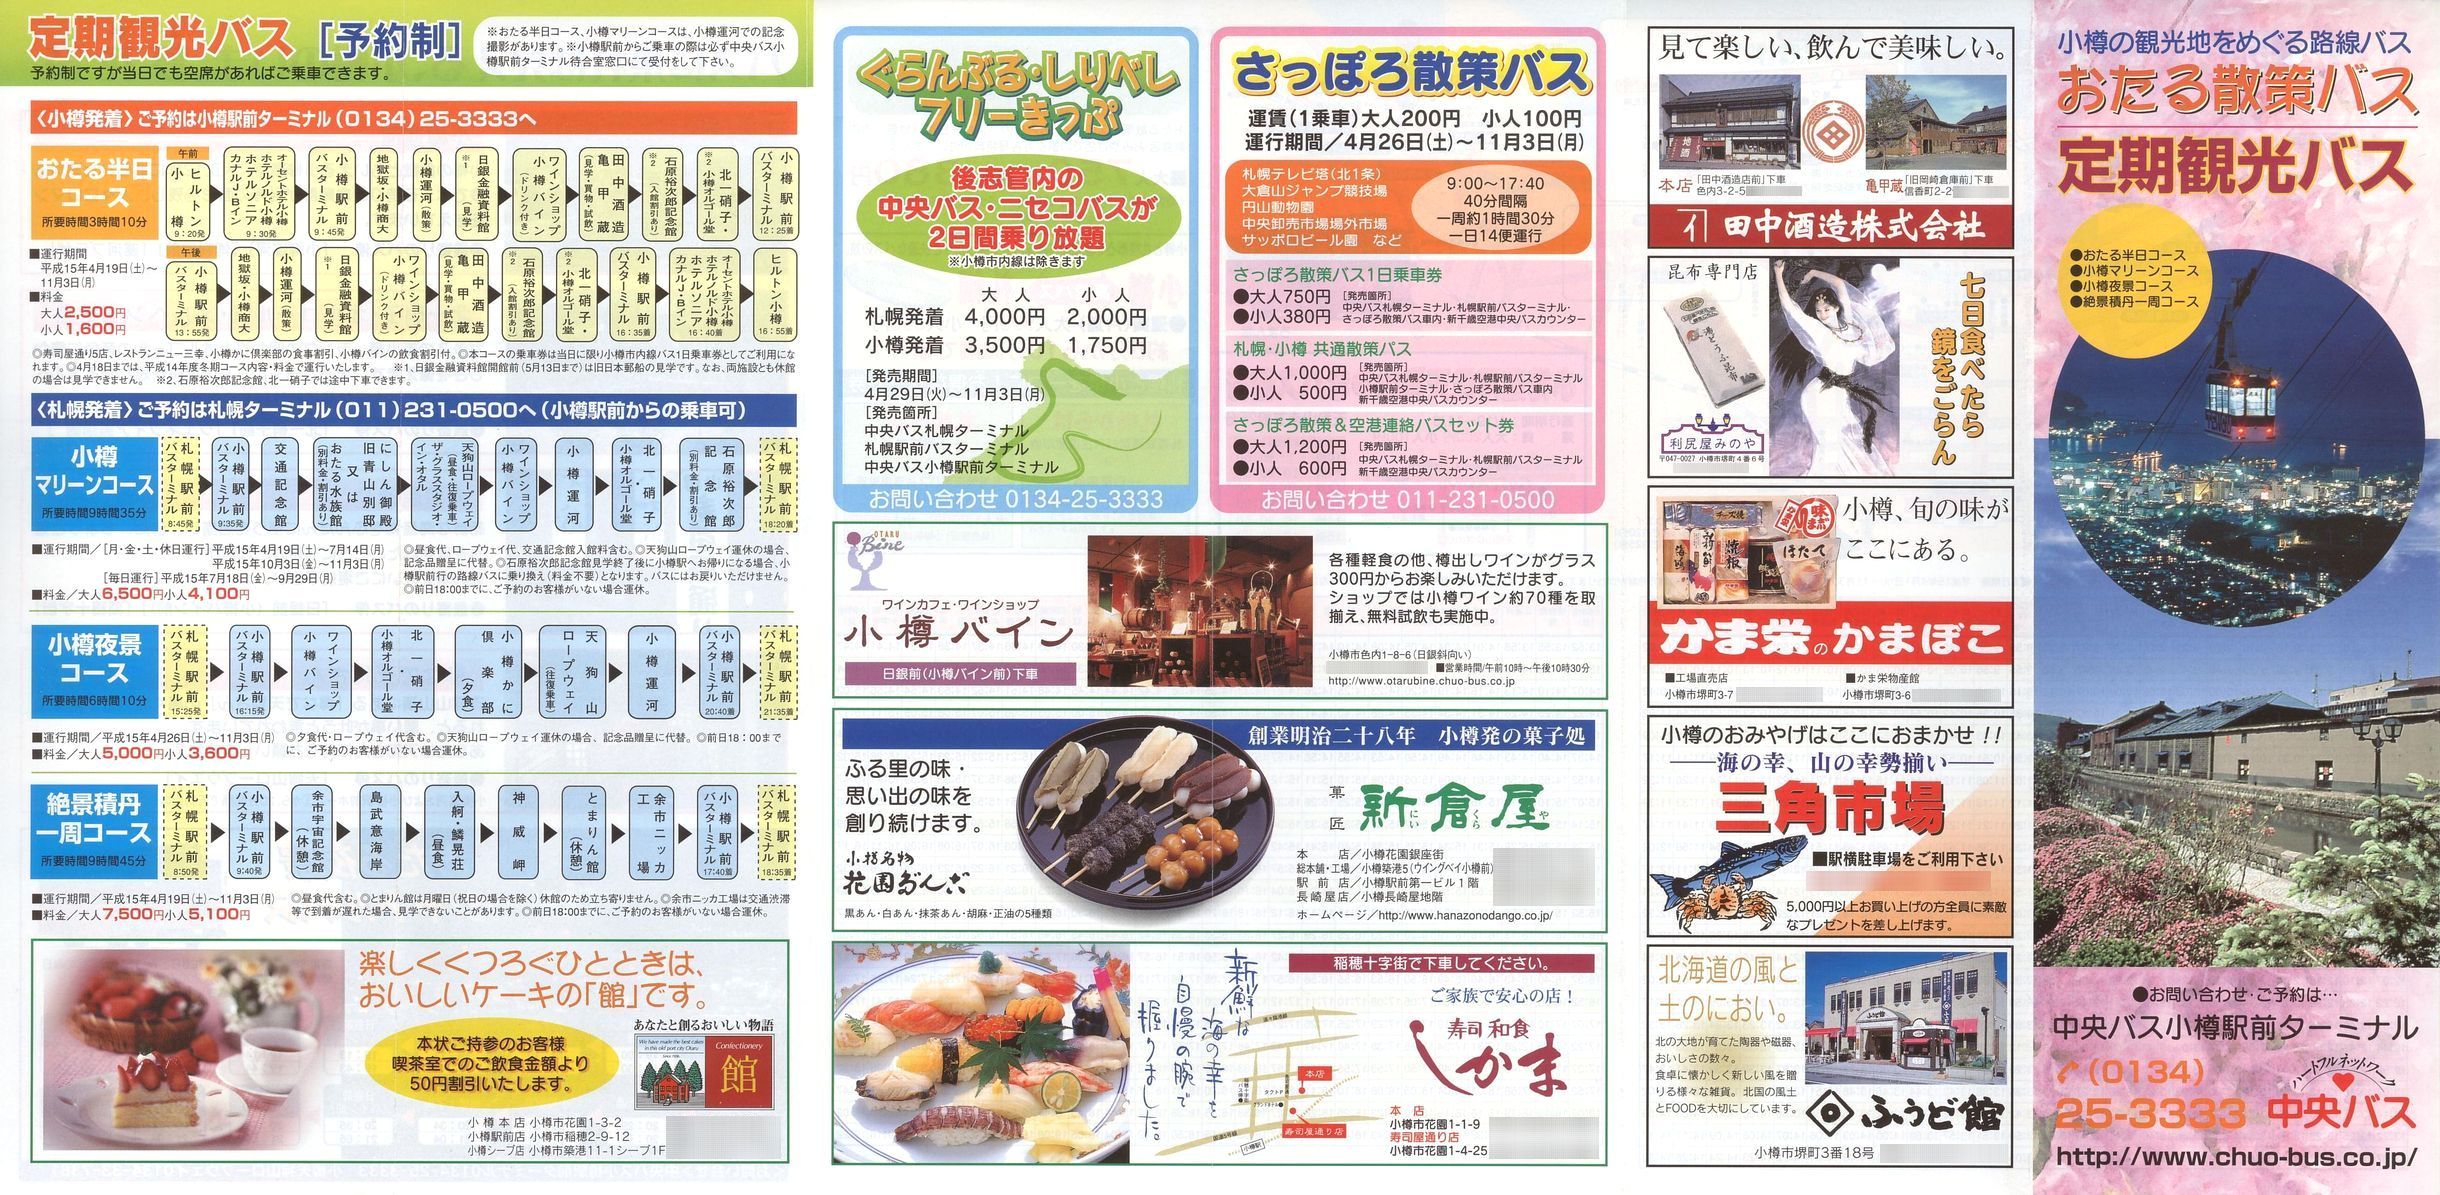 2003-04-01改正_北海道中央バス(小樽)_おたる散策バス・定期観光バスチラシ表面